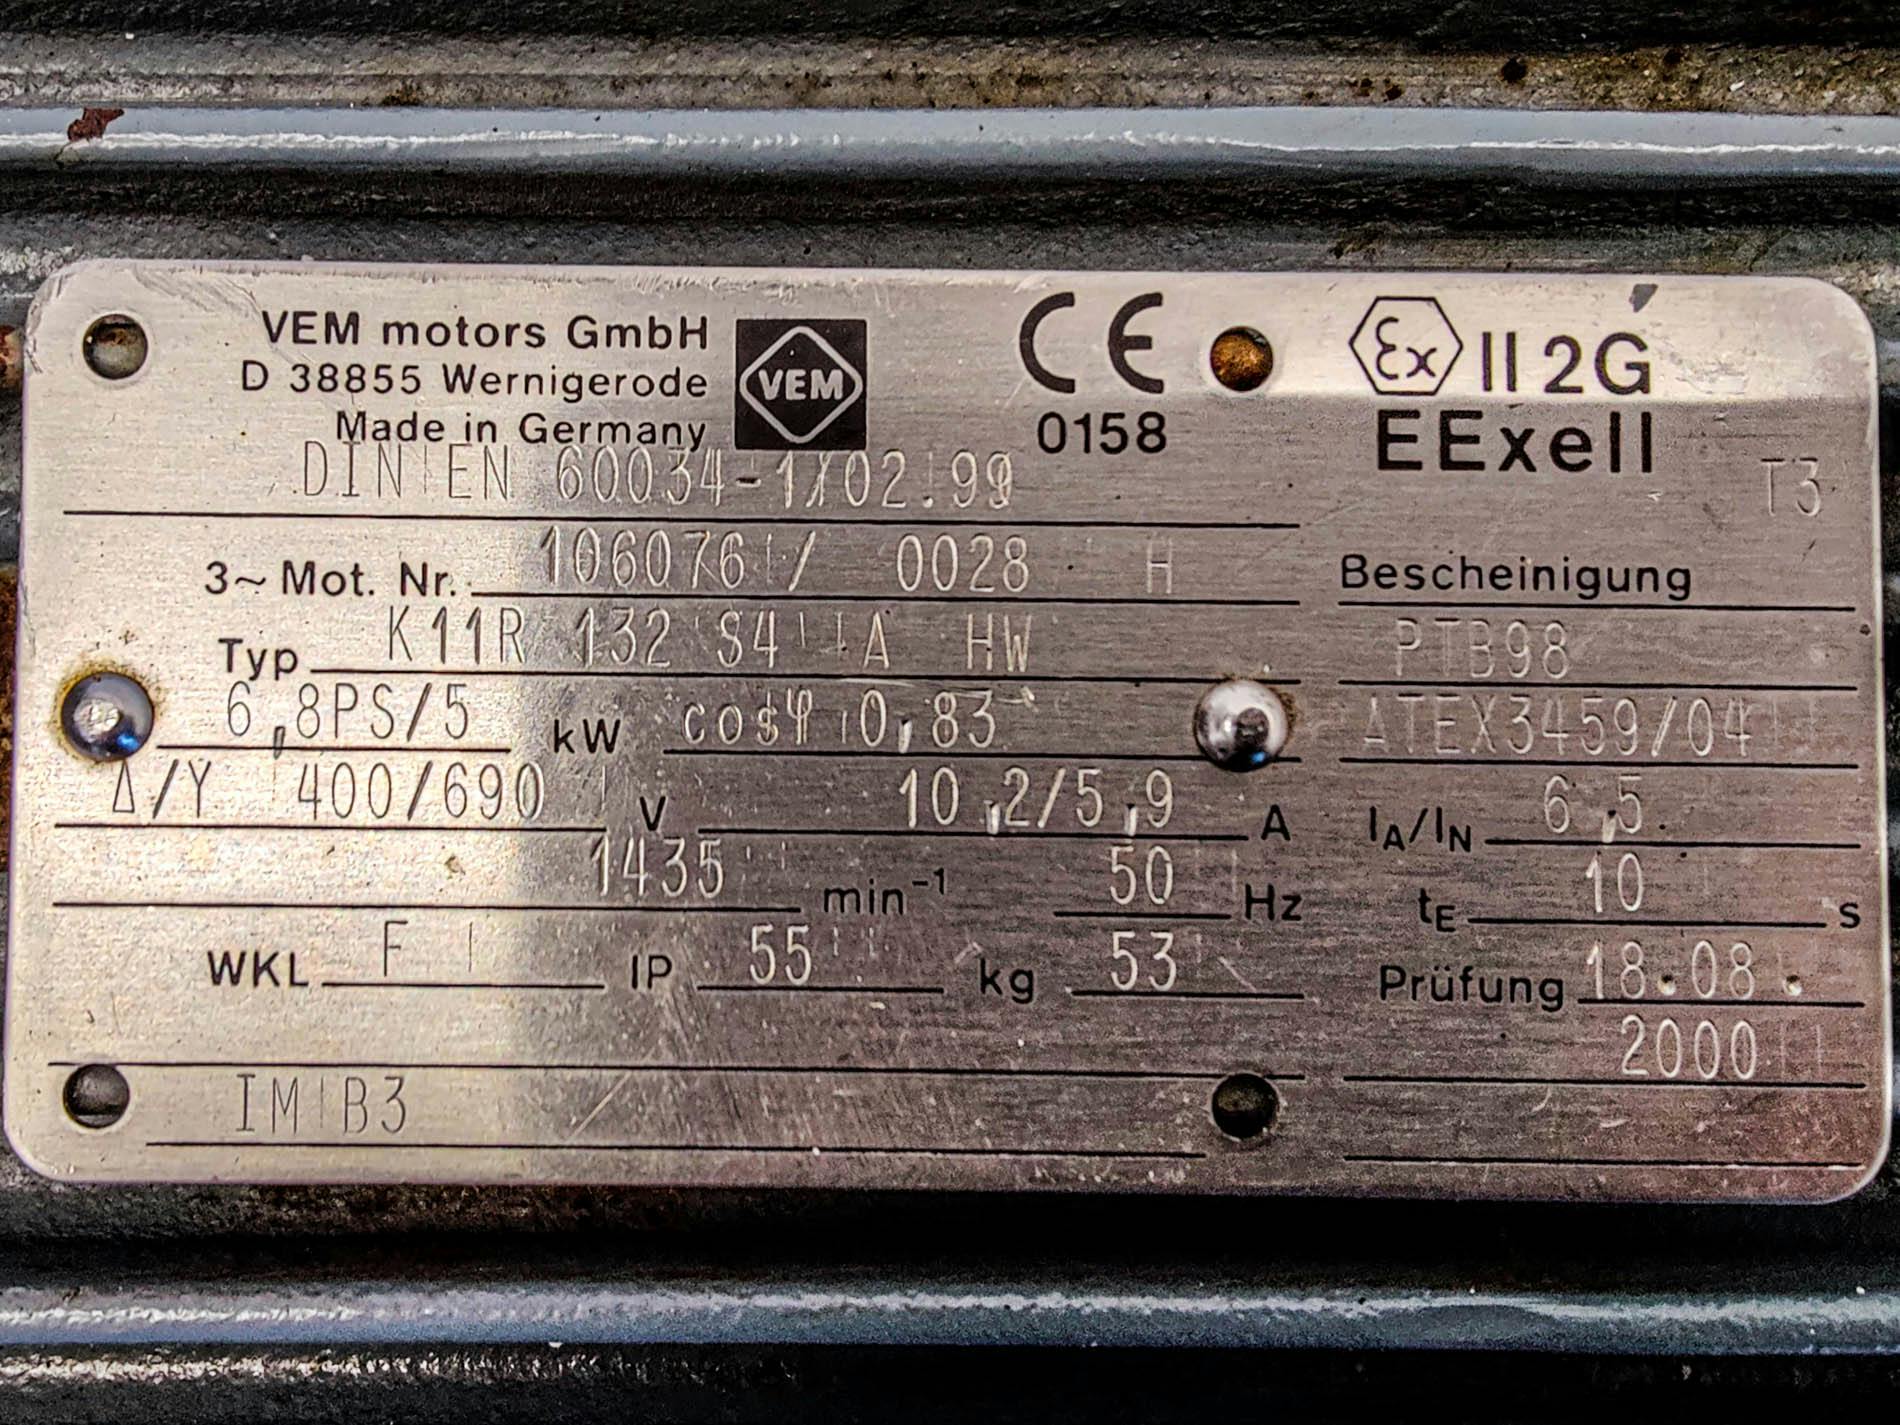 Leybold E250 - Vacuum pump - image 8